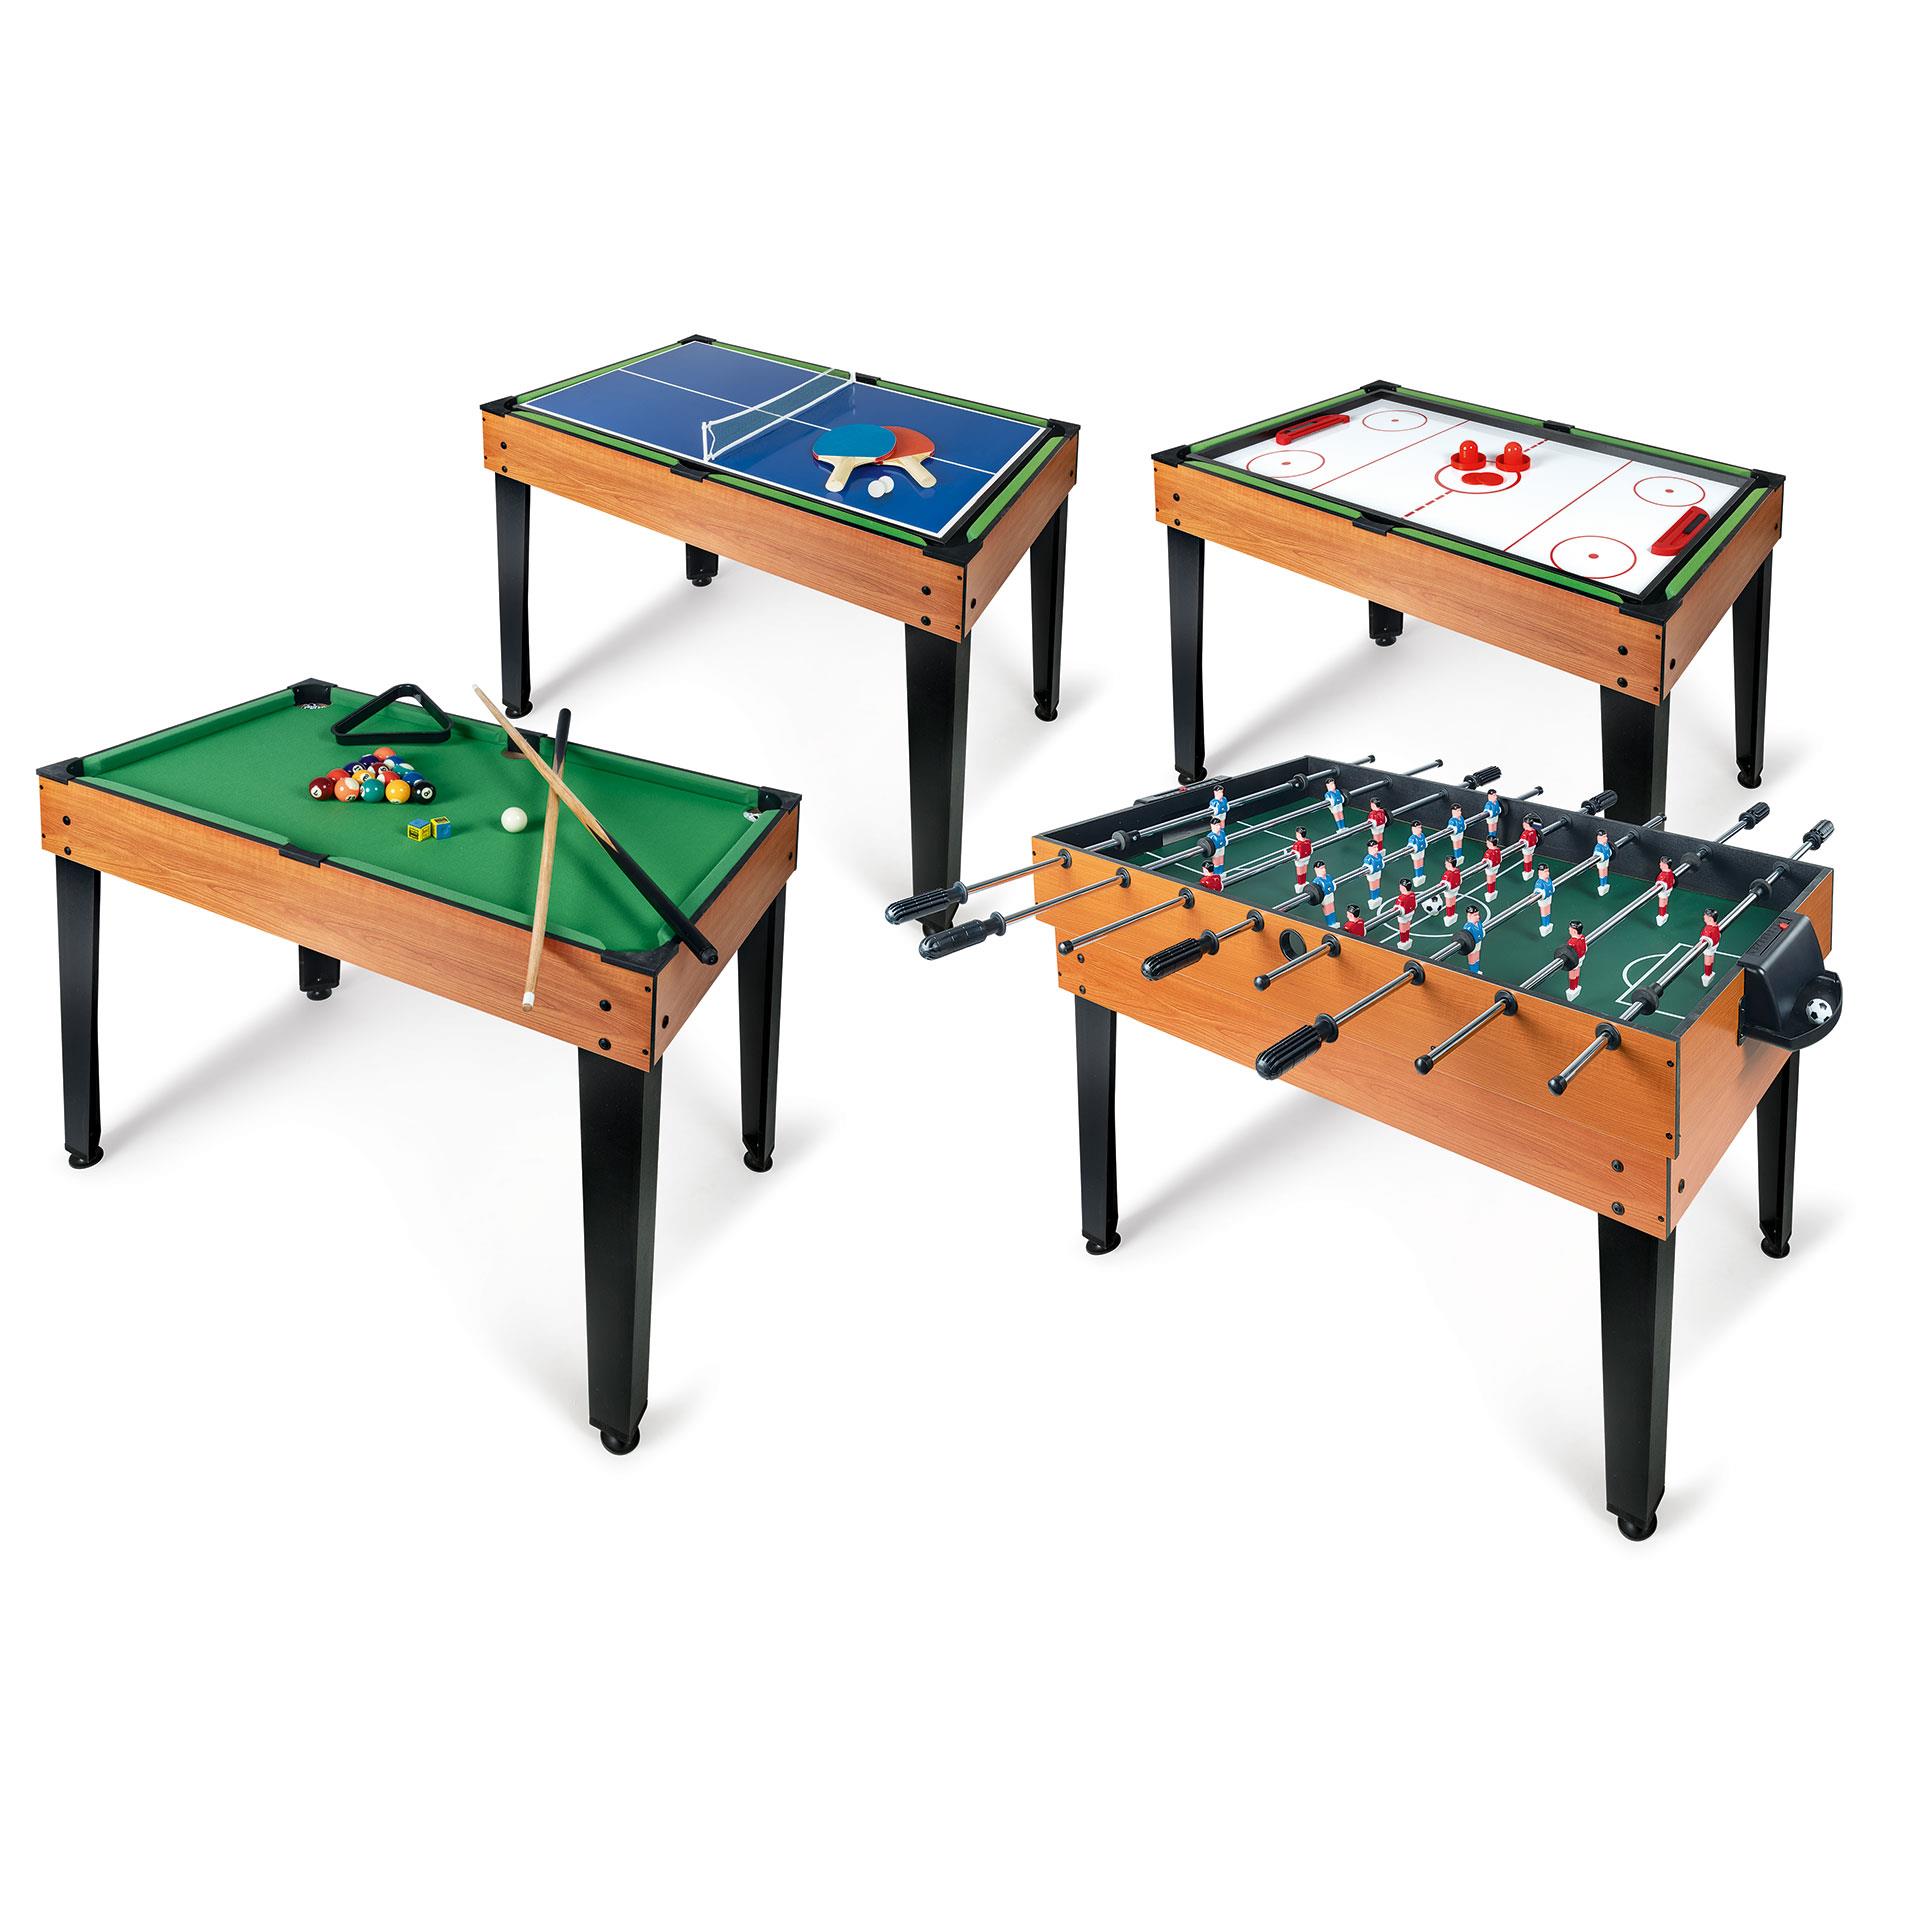 Bild mit Tischfussball, Ping-Pong, Billard und Air-Hockey Tisch